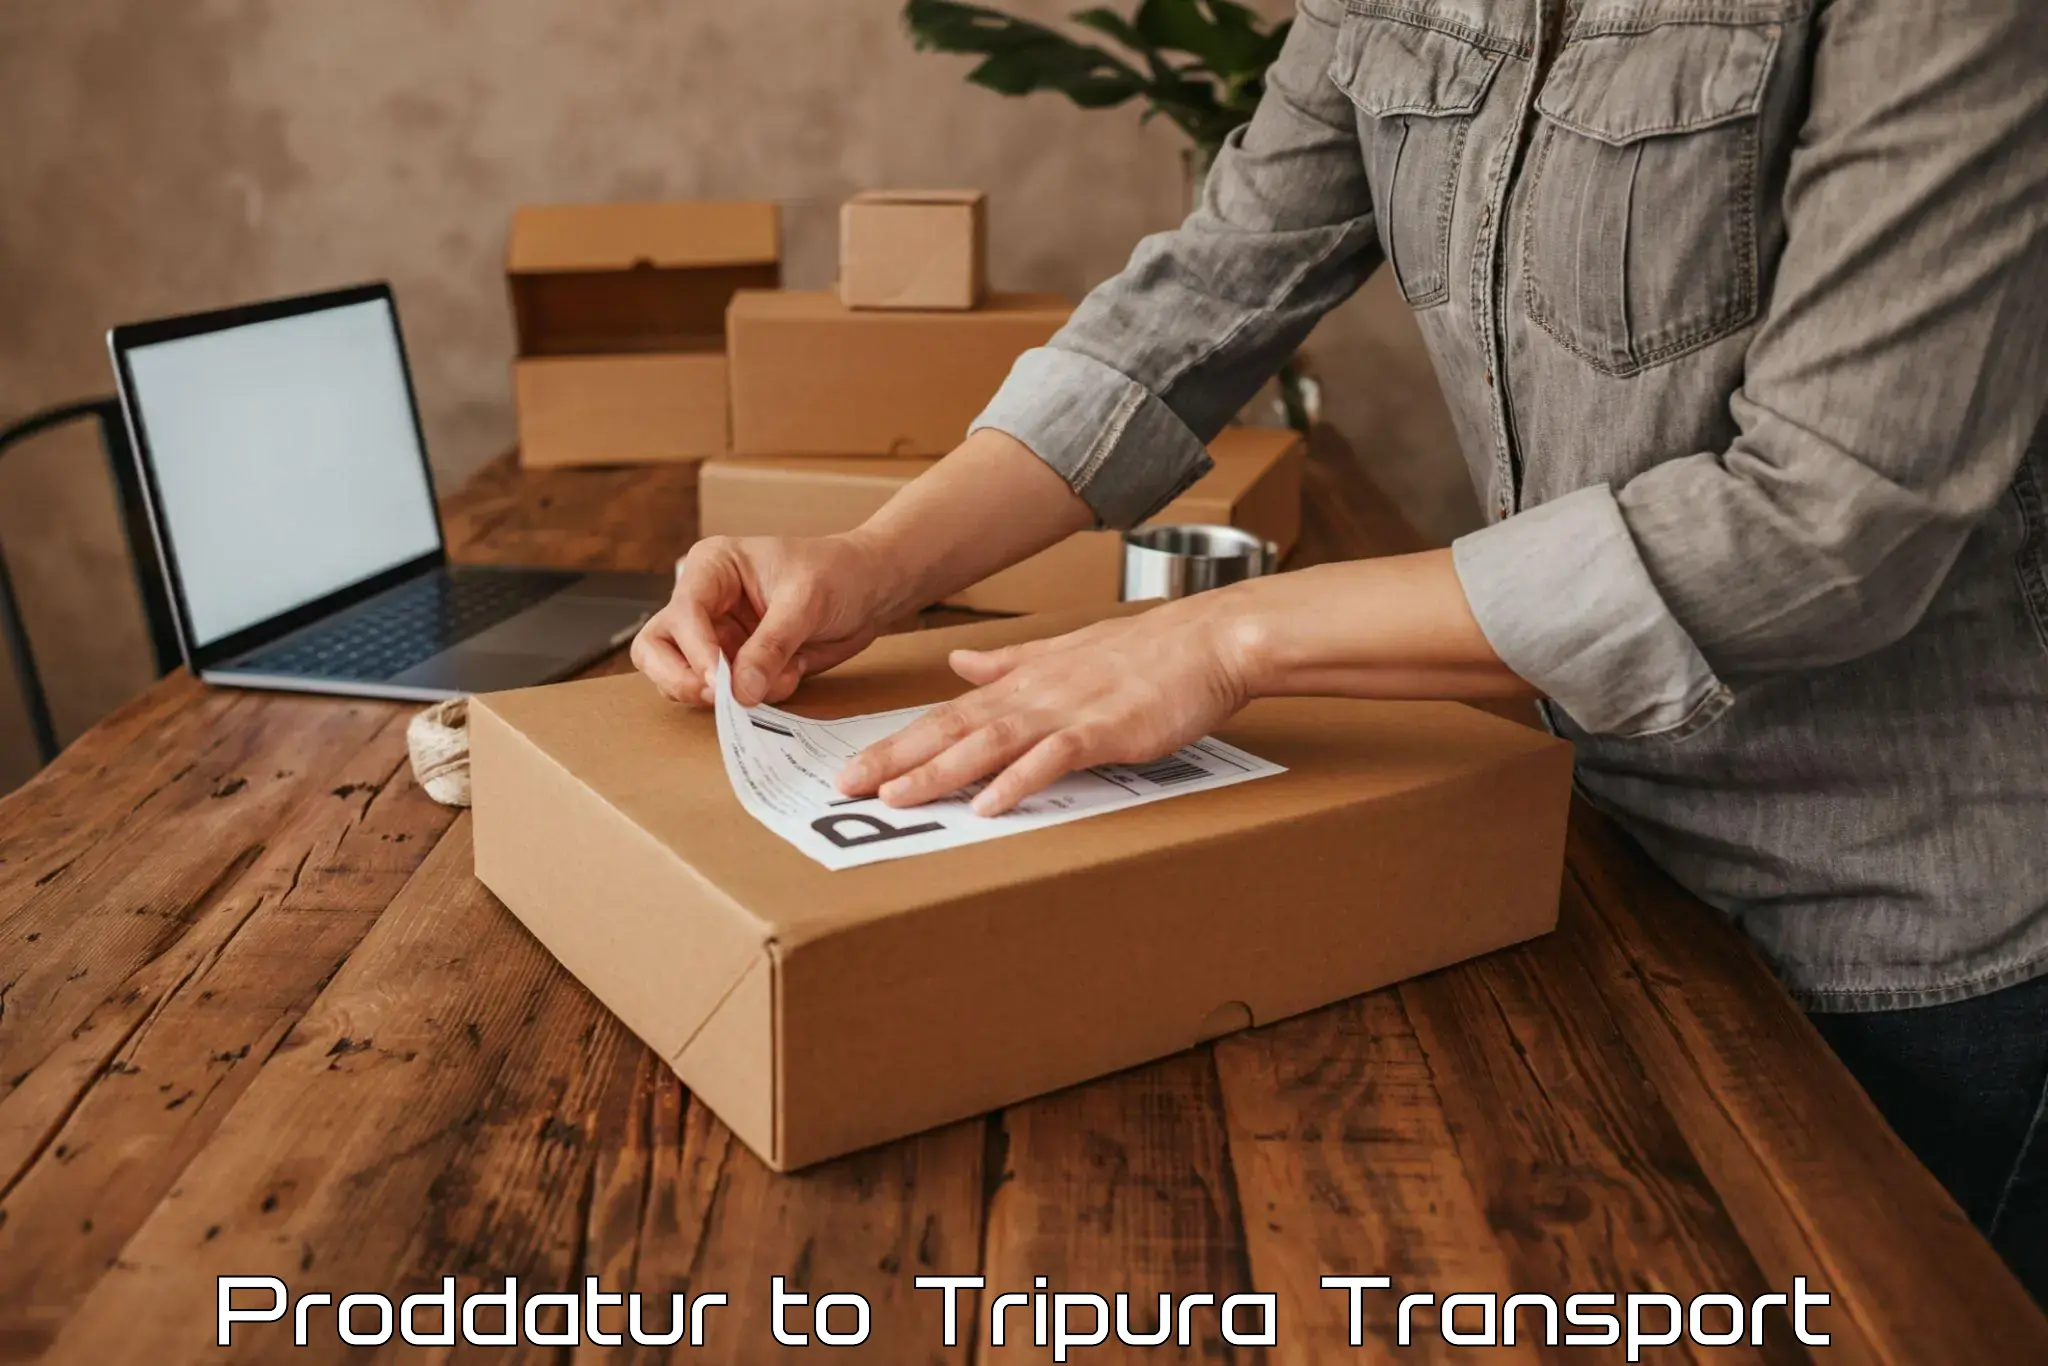 Container transport service Proddatur to Udaipur Tripura